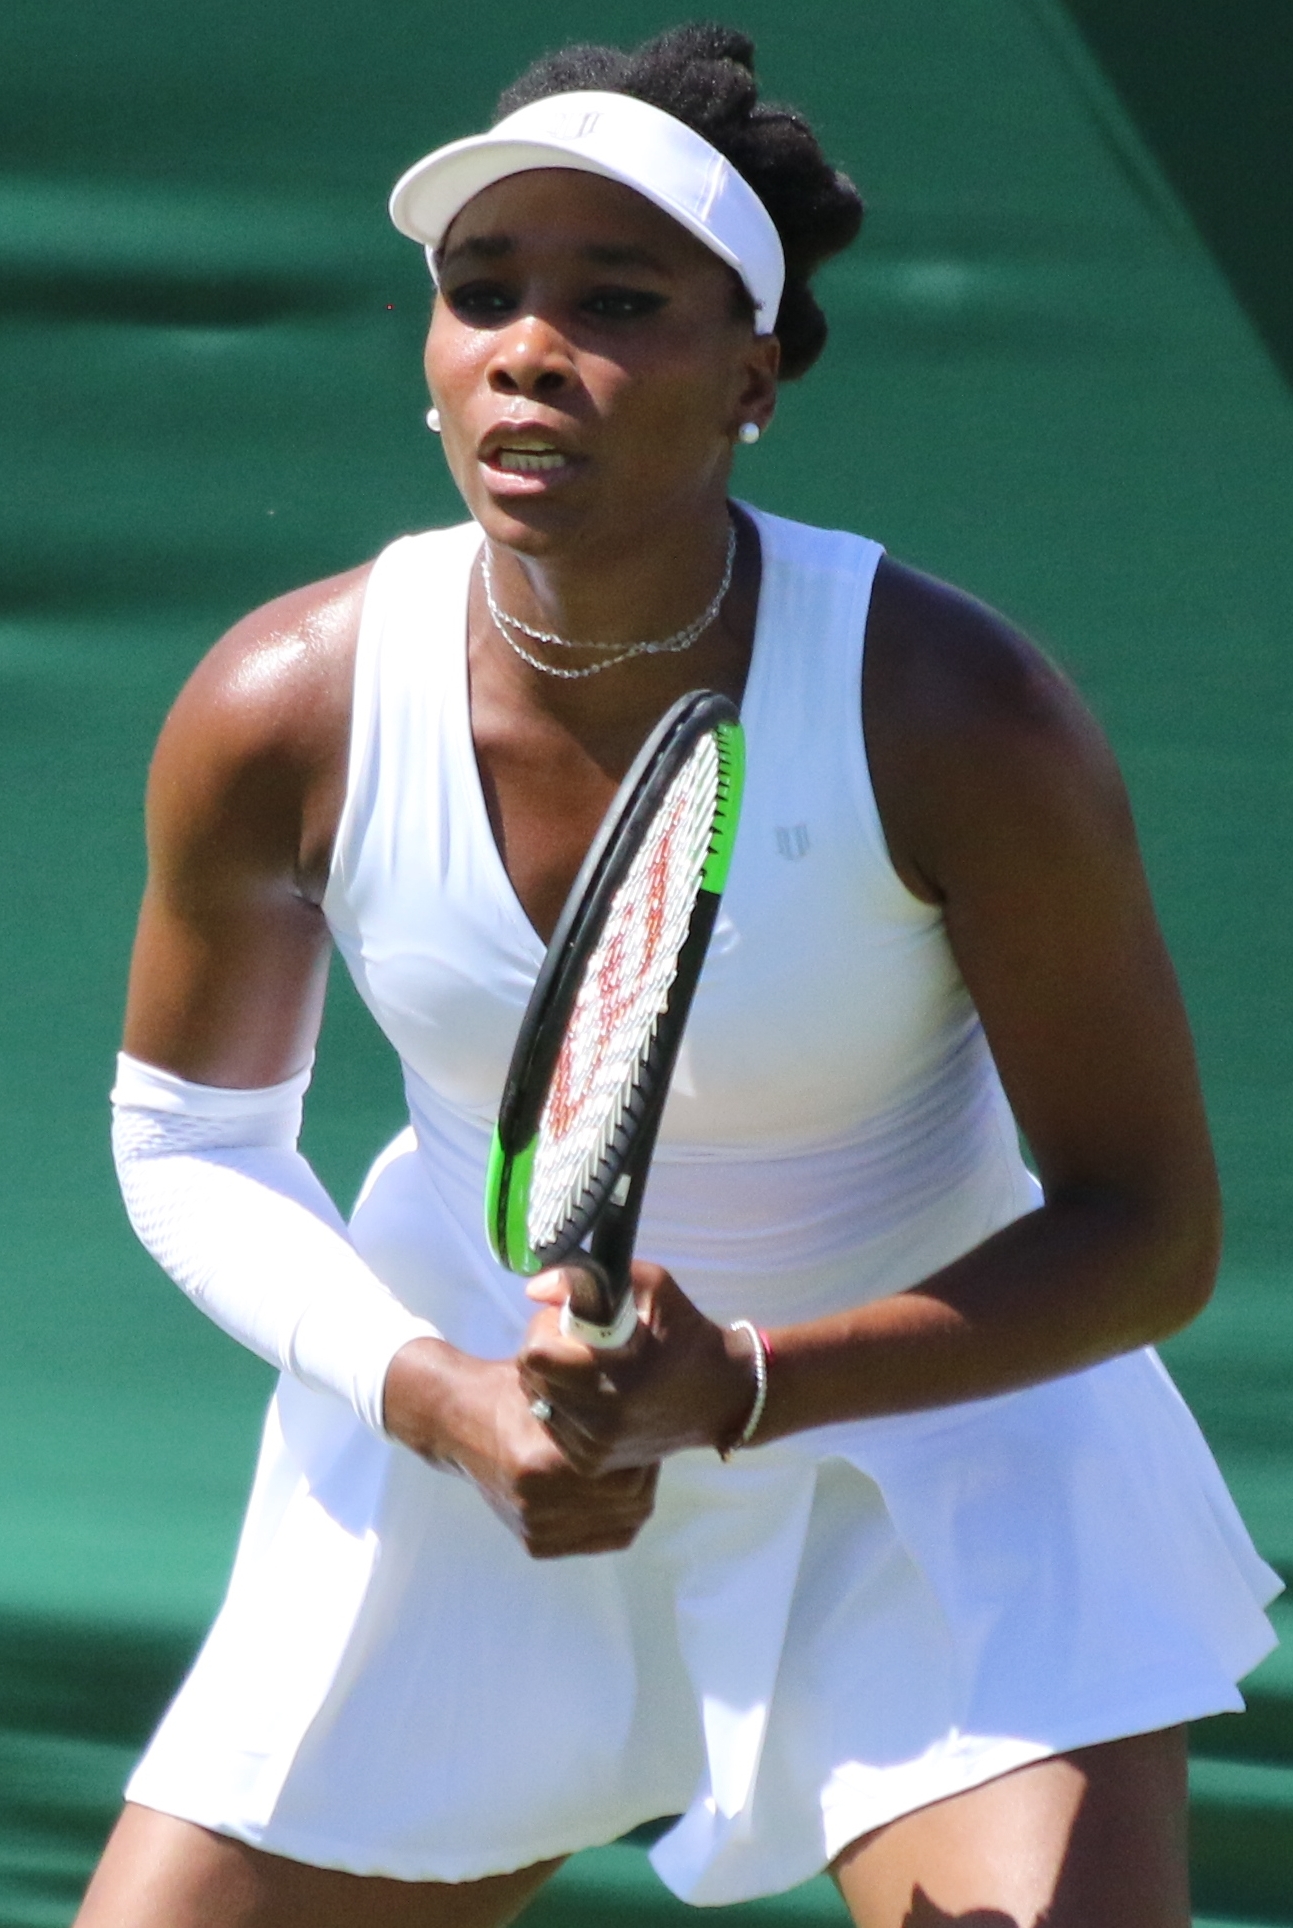 Venus Williams career statistics